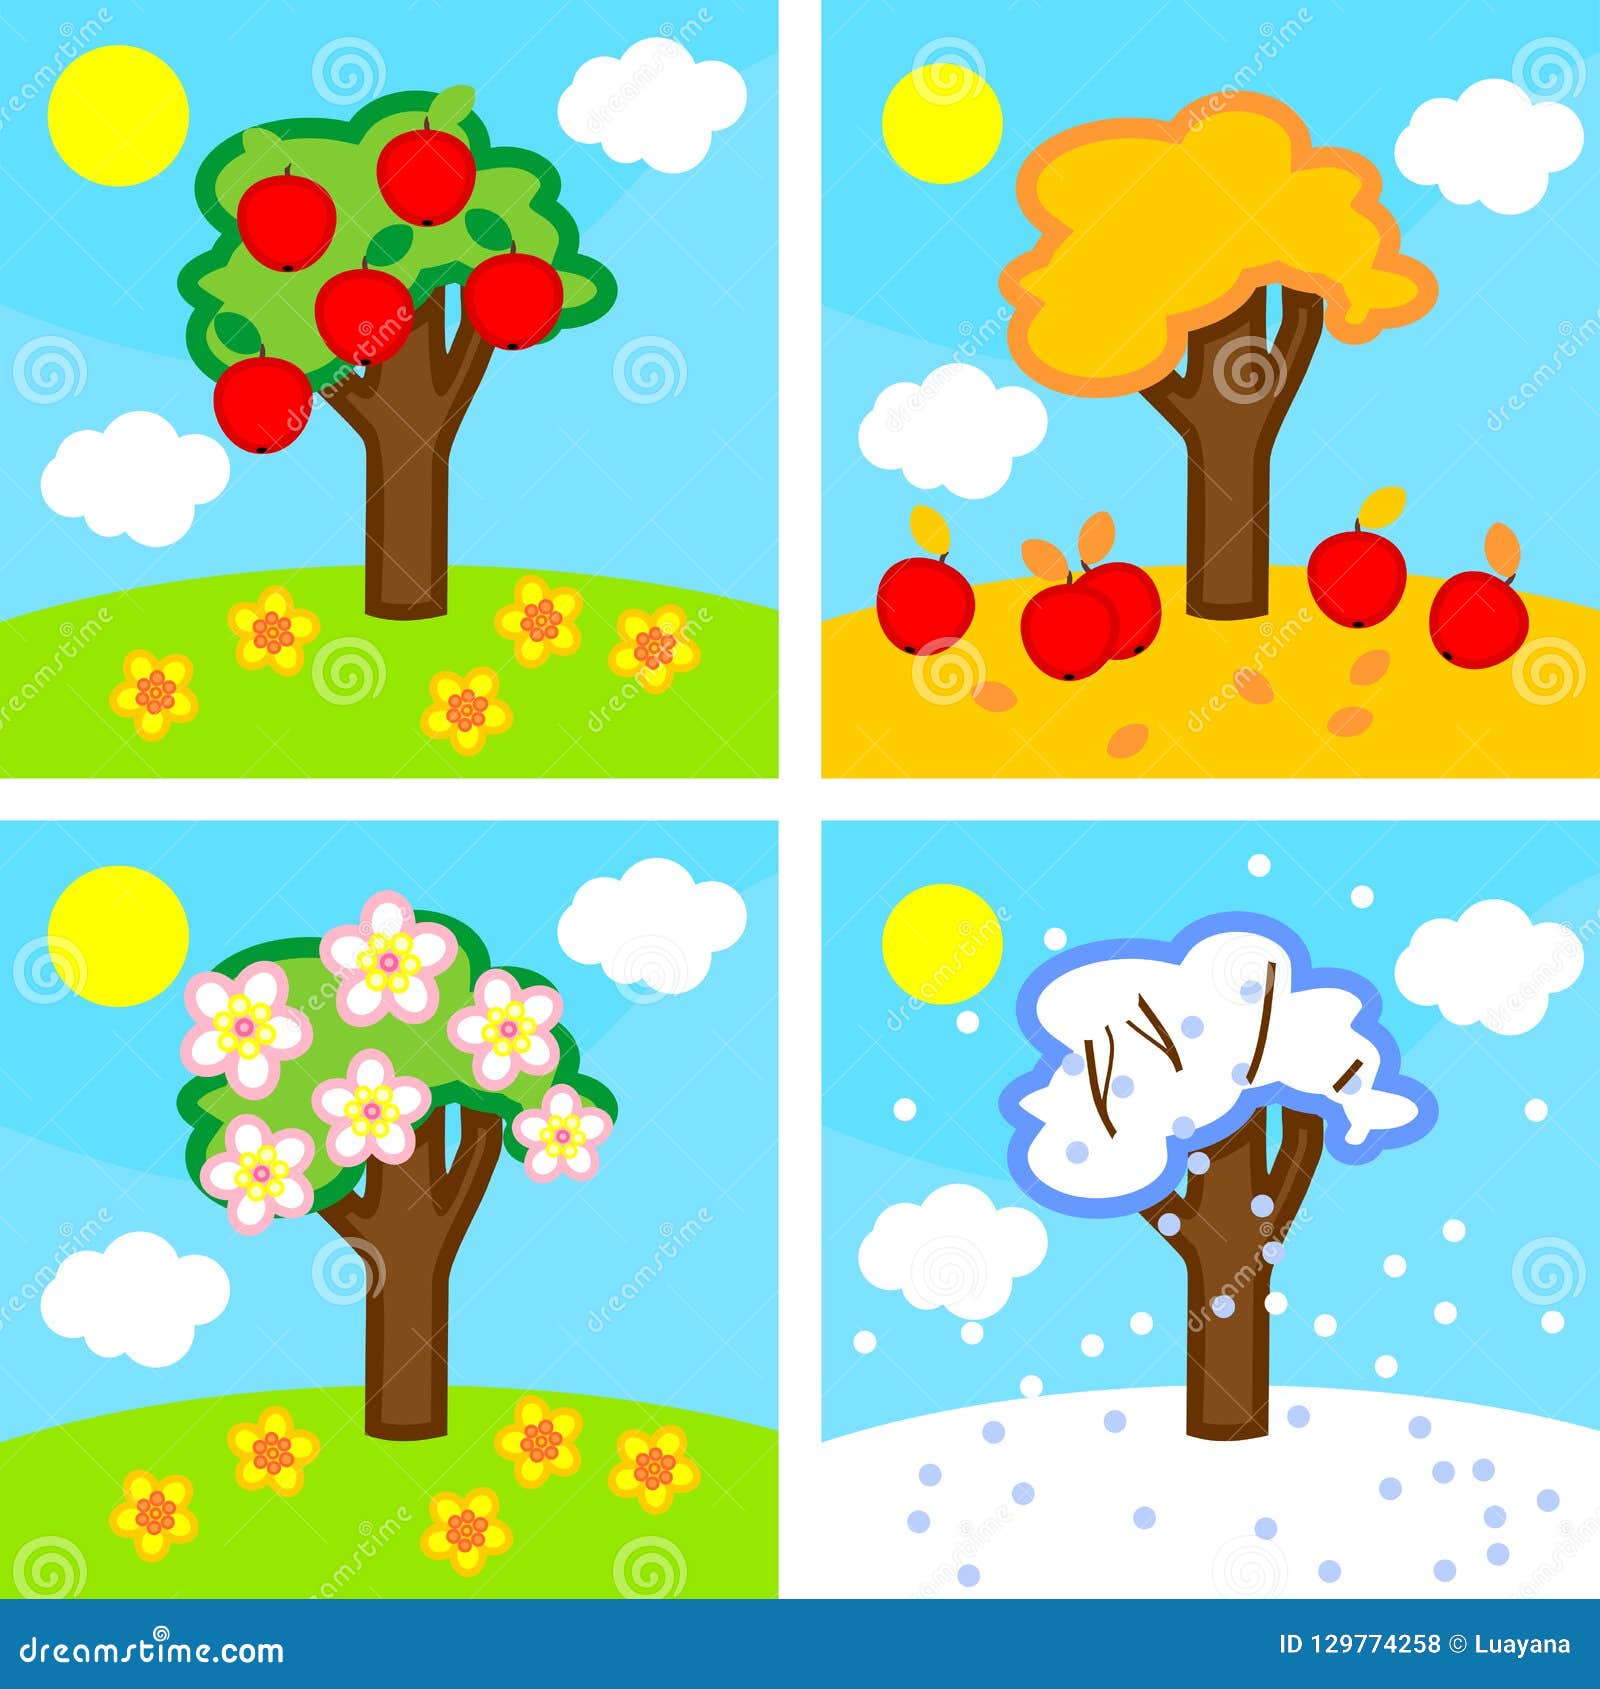 Яблоня в разные времена года. Яблоня 4 времени года. Деревья в разные времена года для дошкольников.